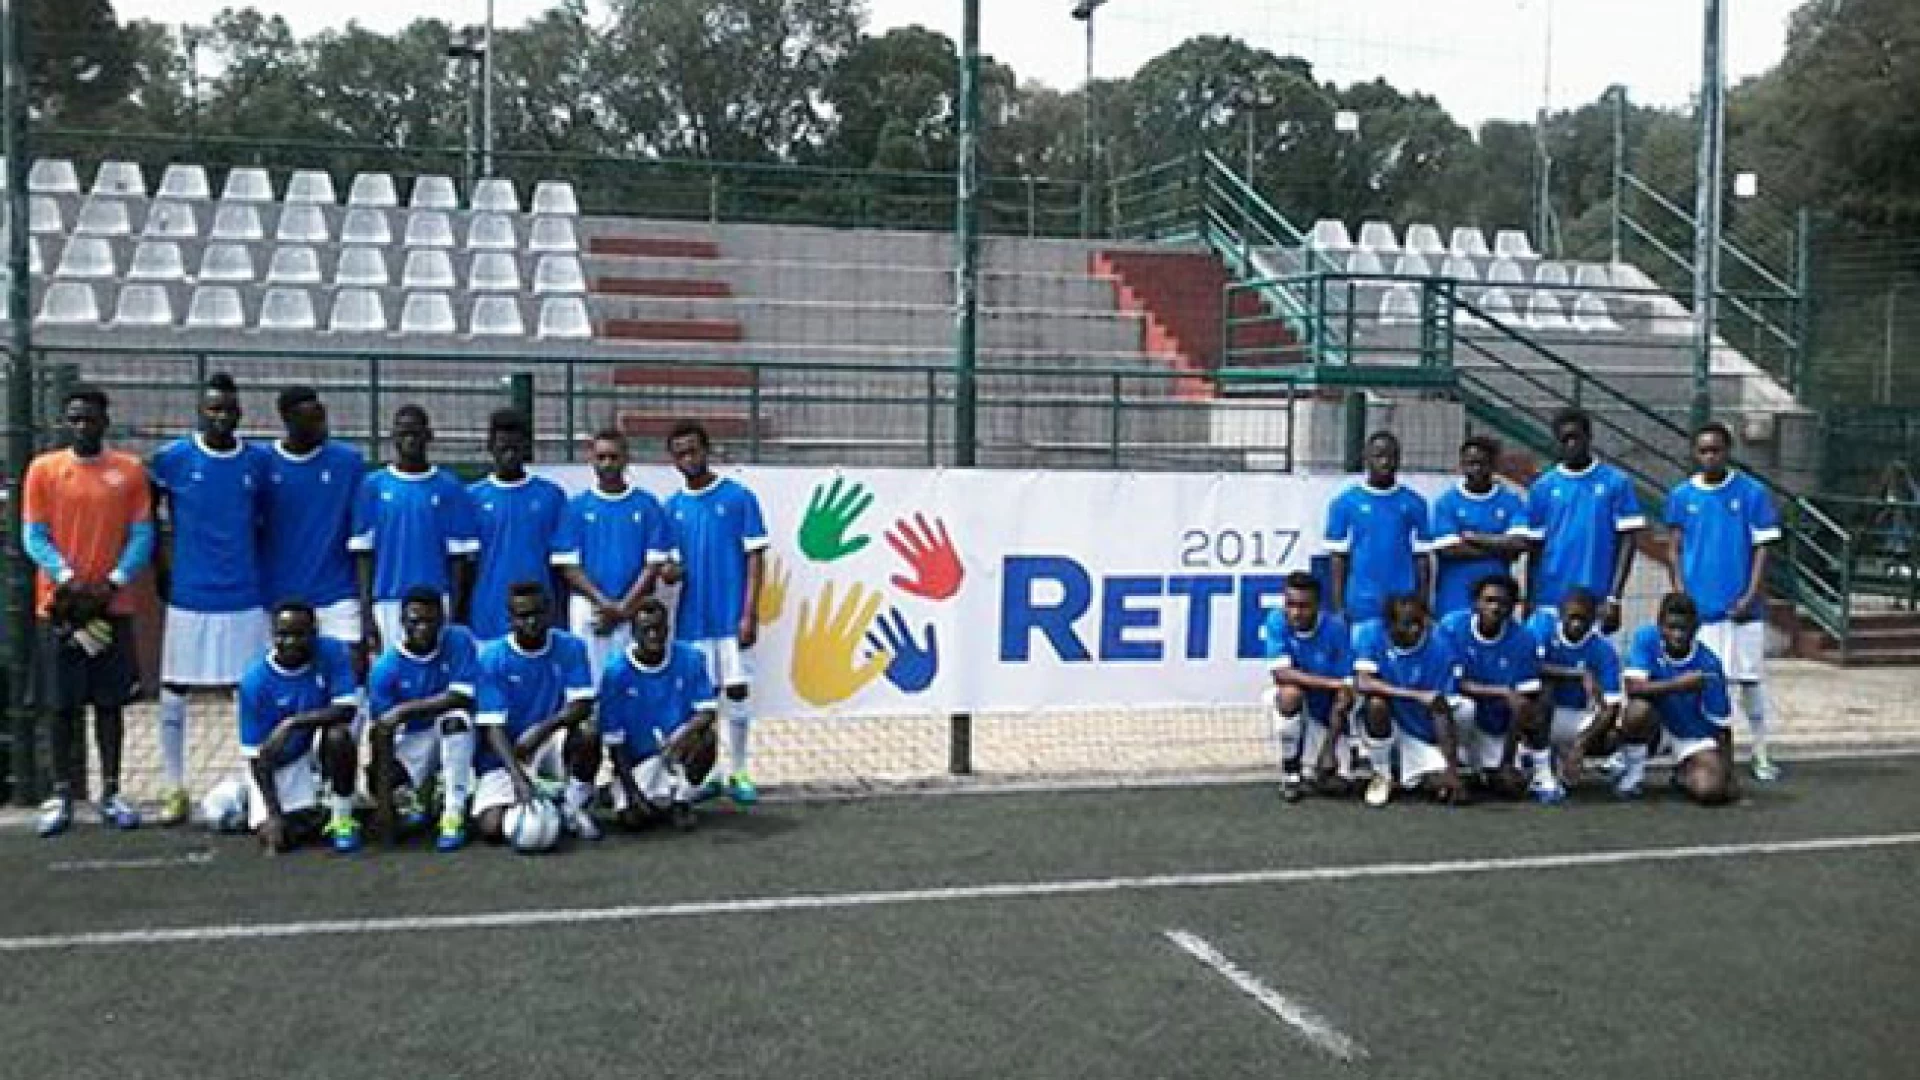 I migranti di Cerro al Volturno partecipano al torneo nazionale di calcio Sprar. Gli atleti impegnati nel progetto Rete 2017.